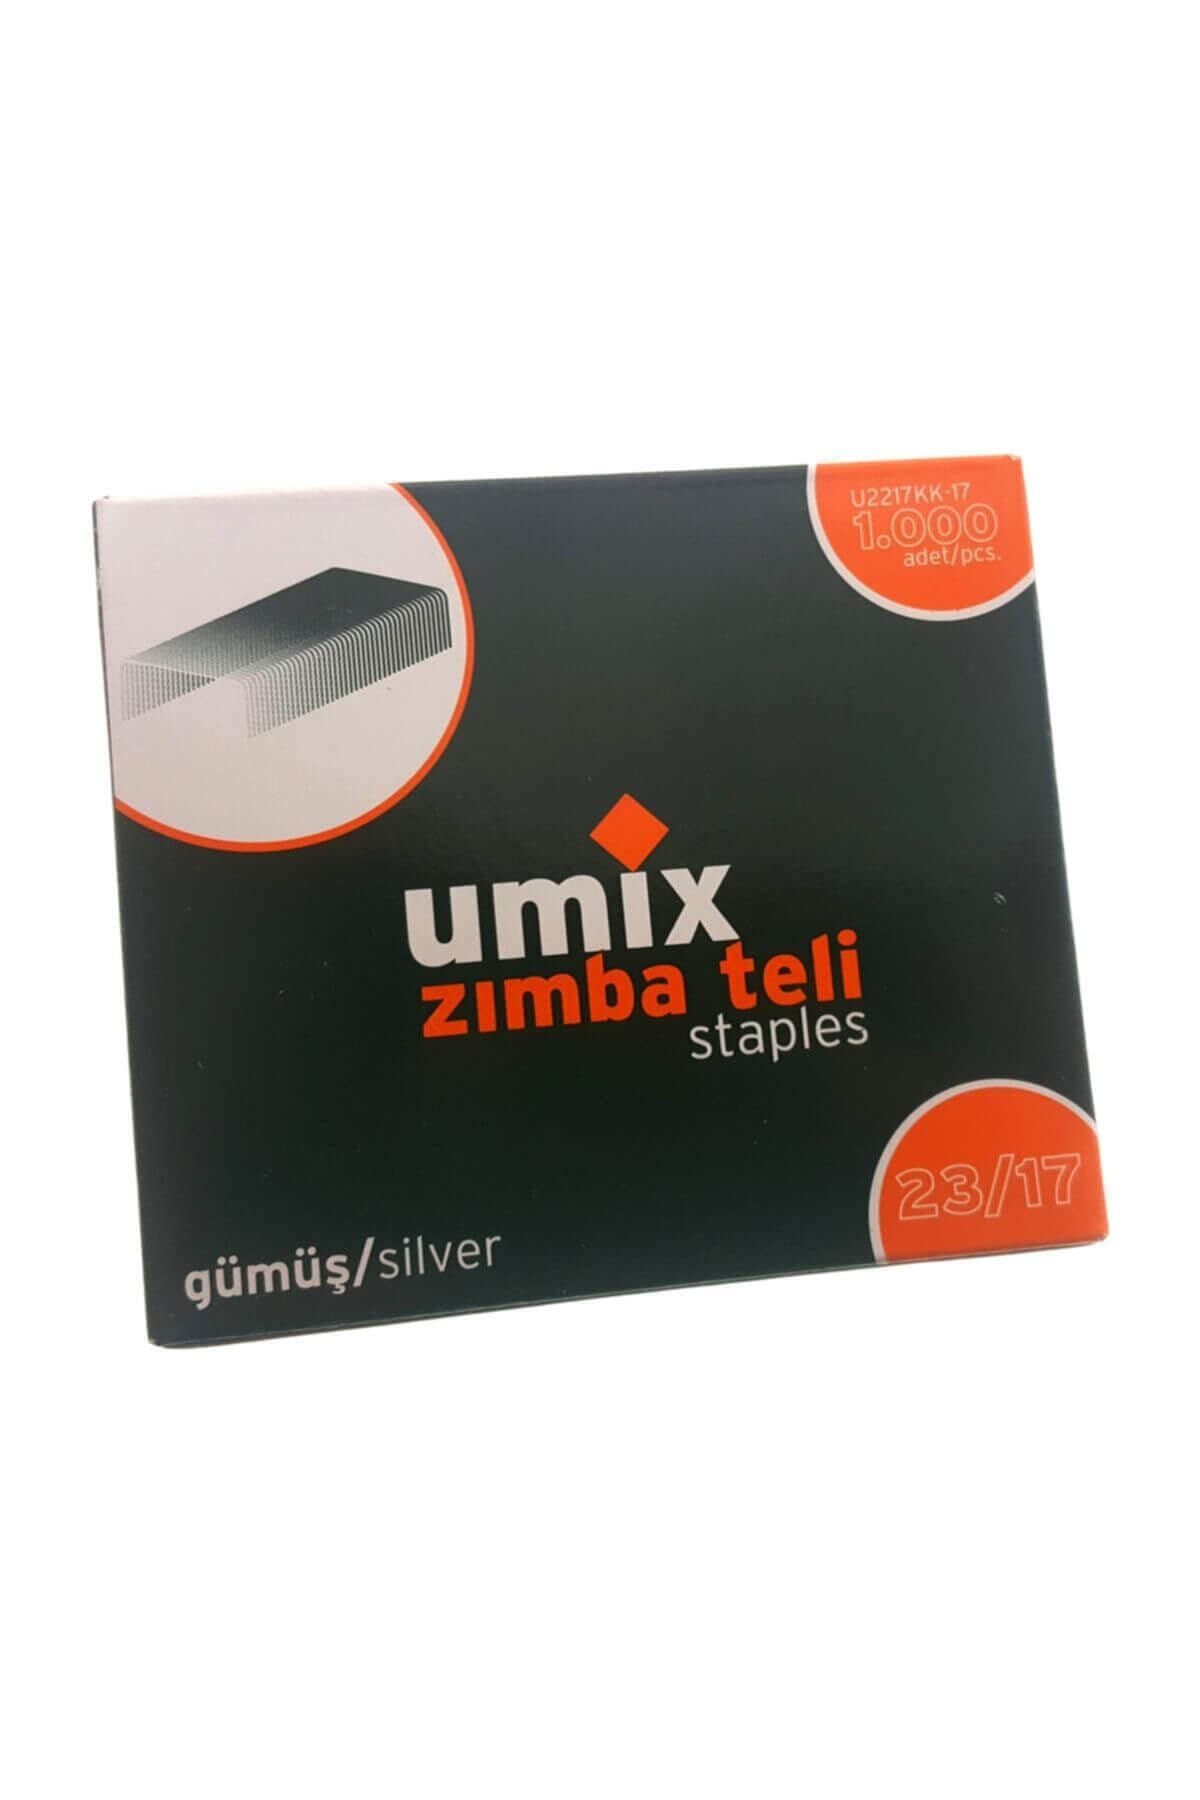 Umix Zımba Teli 23/17 Gümüş 1000 Adet N:U2217KK-17